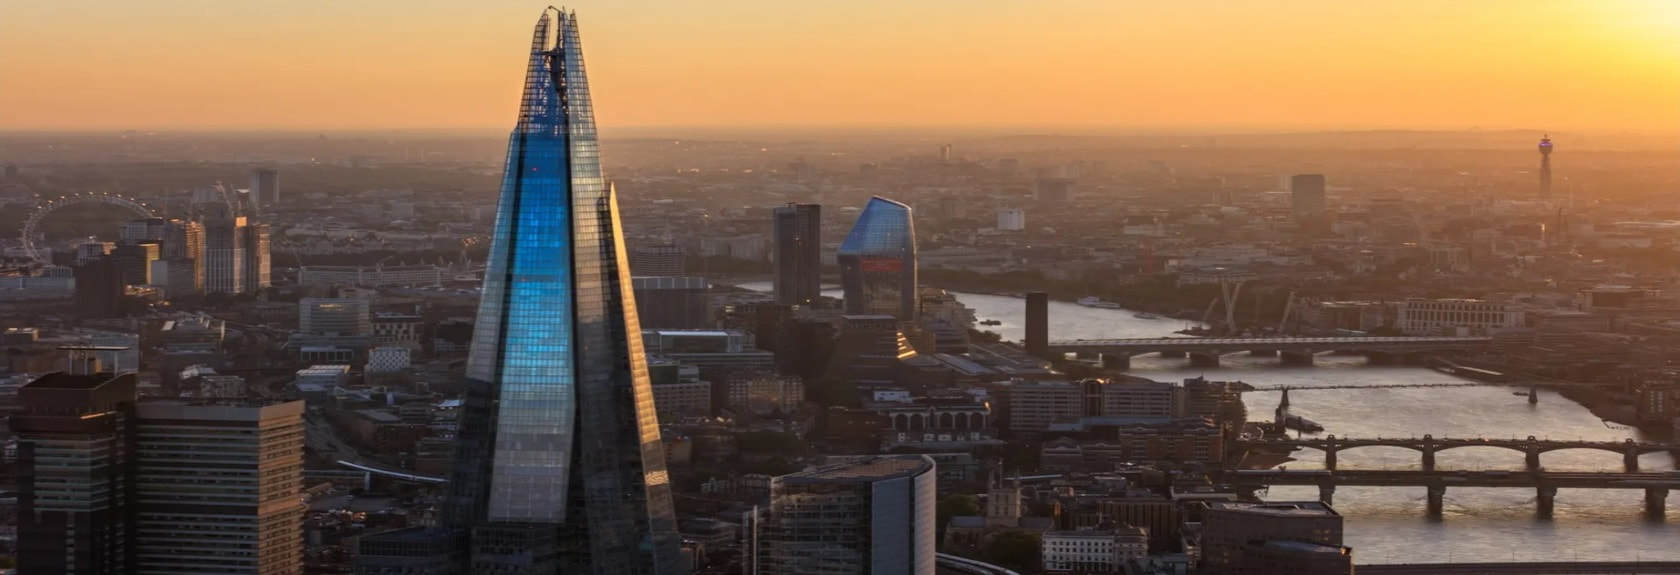 Nas margens do Tamisa, perto da London Tower Bridge fica The Shard, um impressionante edifício de vidro em forma de pirâmide. Com uma altura de 310 metros, The Shard é o edifício mais alto da Europa e, portanto, também o edifício mais alto de Londres.